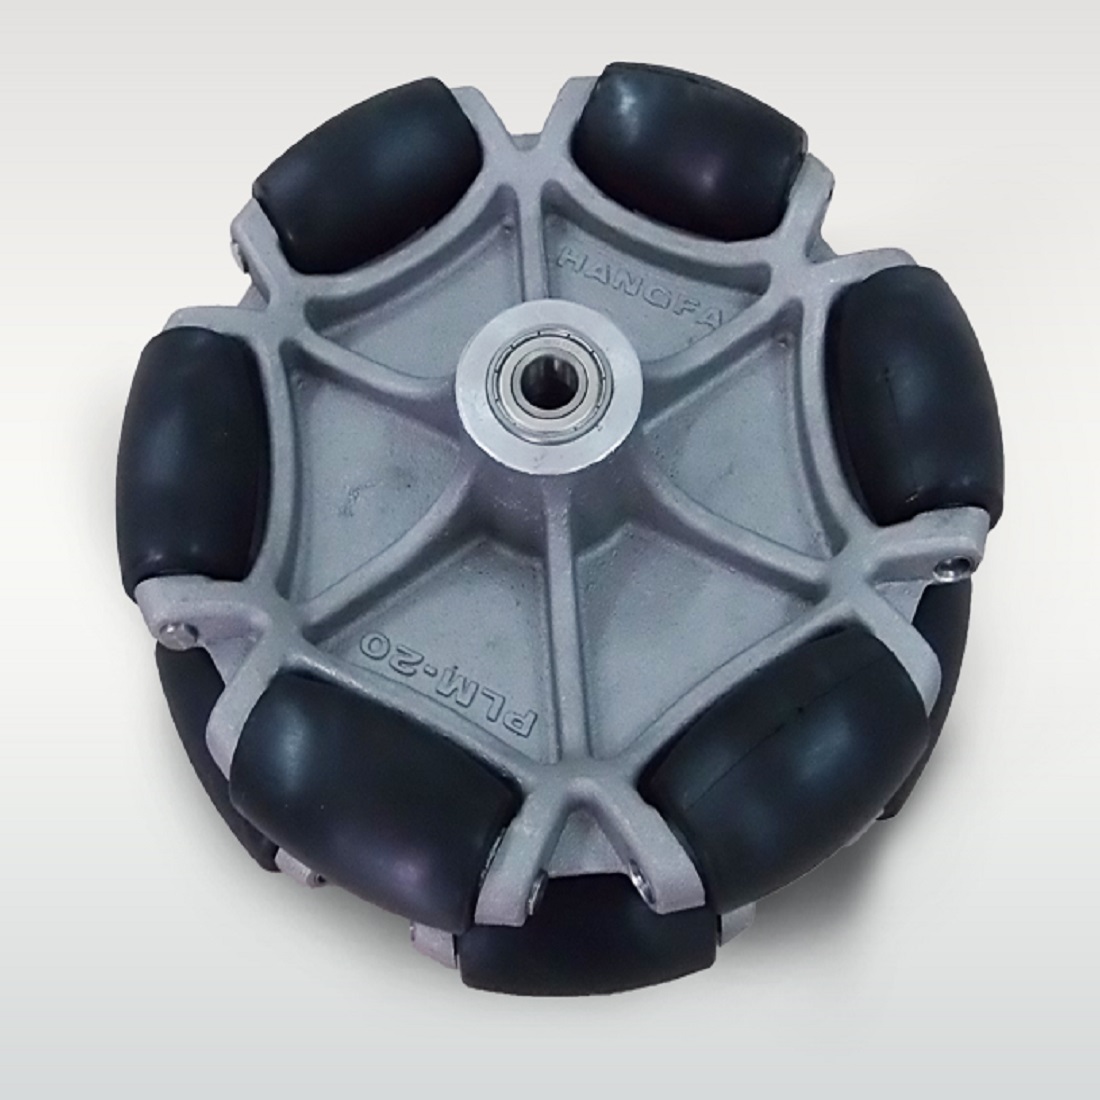 Robot Kit Omni Wheels Mit Pulsationsarmen 360 Grad Manövrierbarkeit Universal 